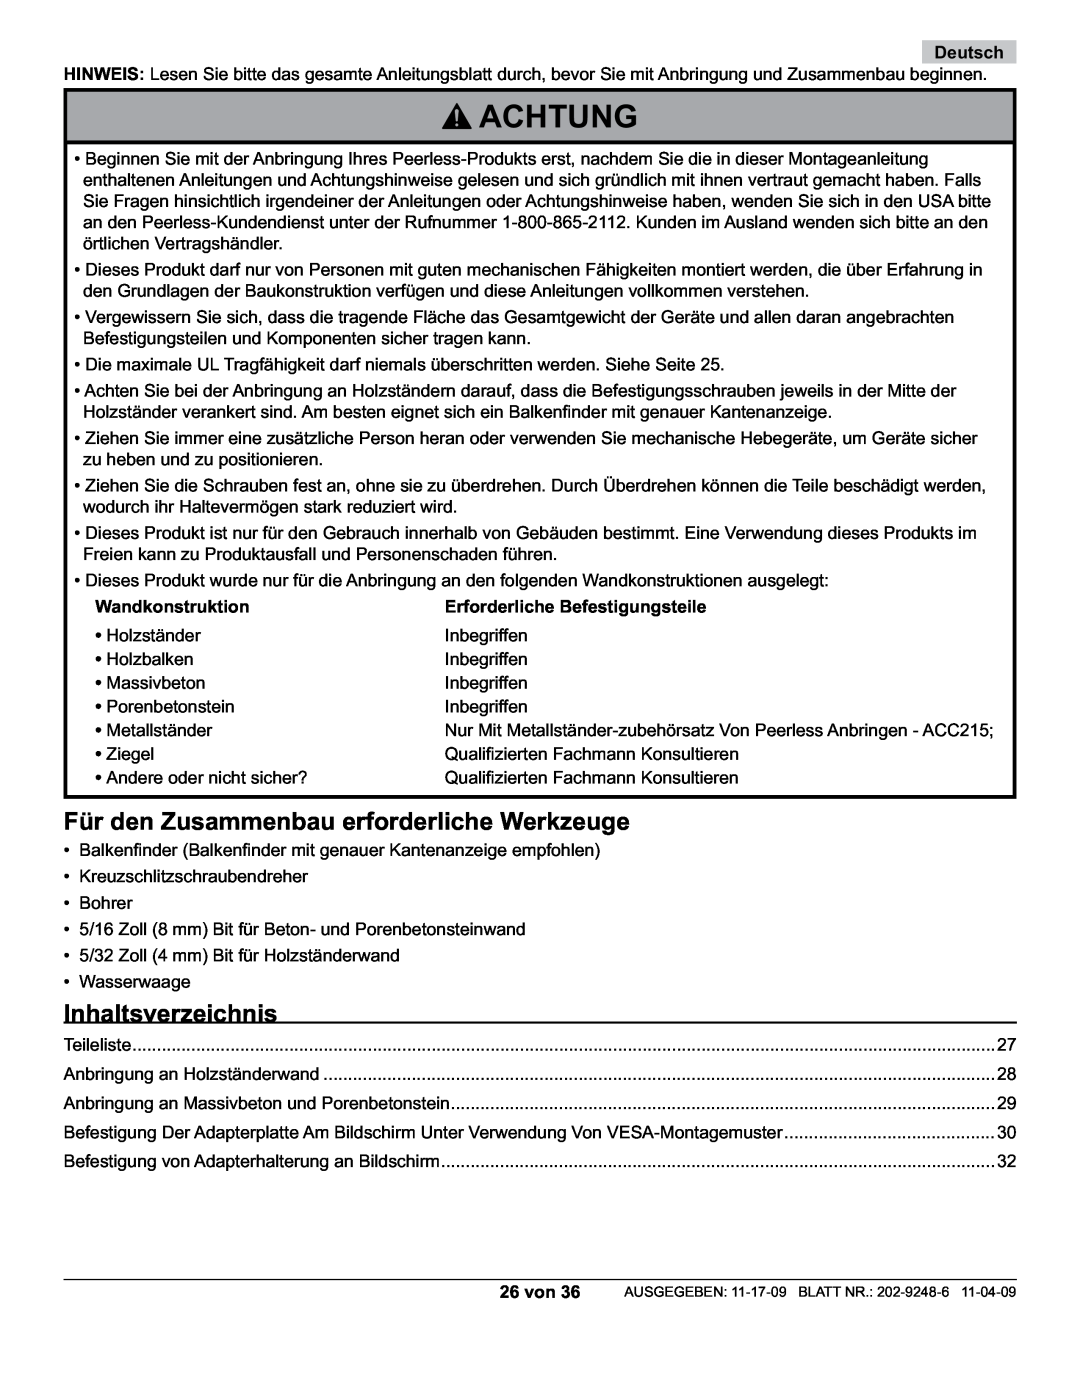 Peerless Industries PF632, PWV210/BK Achtung, Für den Zusammenbau erforderliche Werkzeuge, Inhaltsverzeichnis, Deutsch 